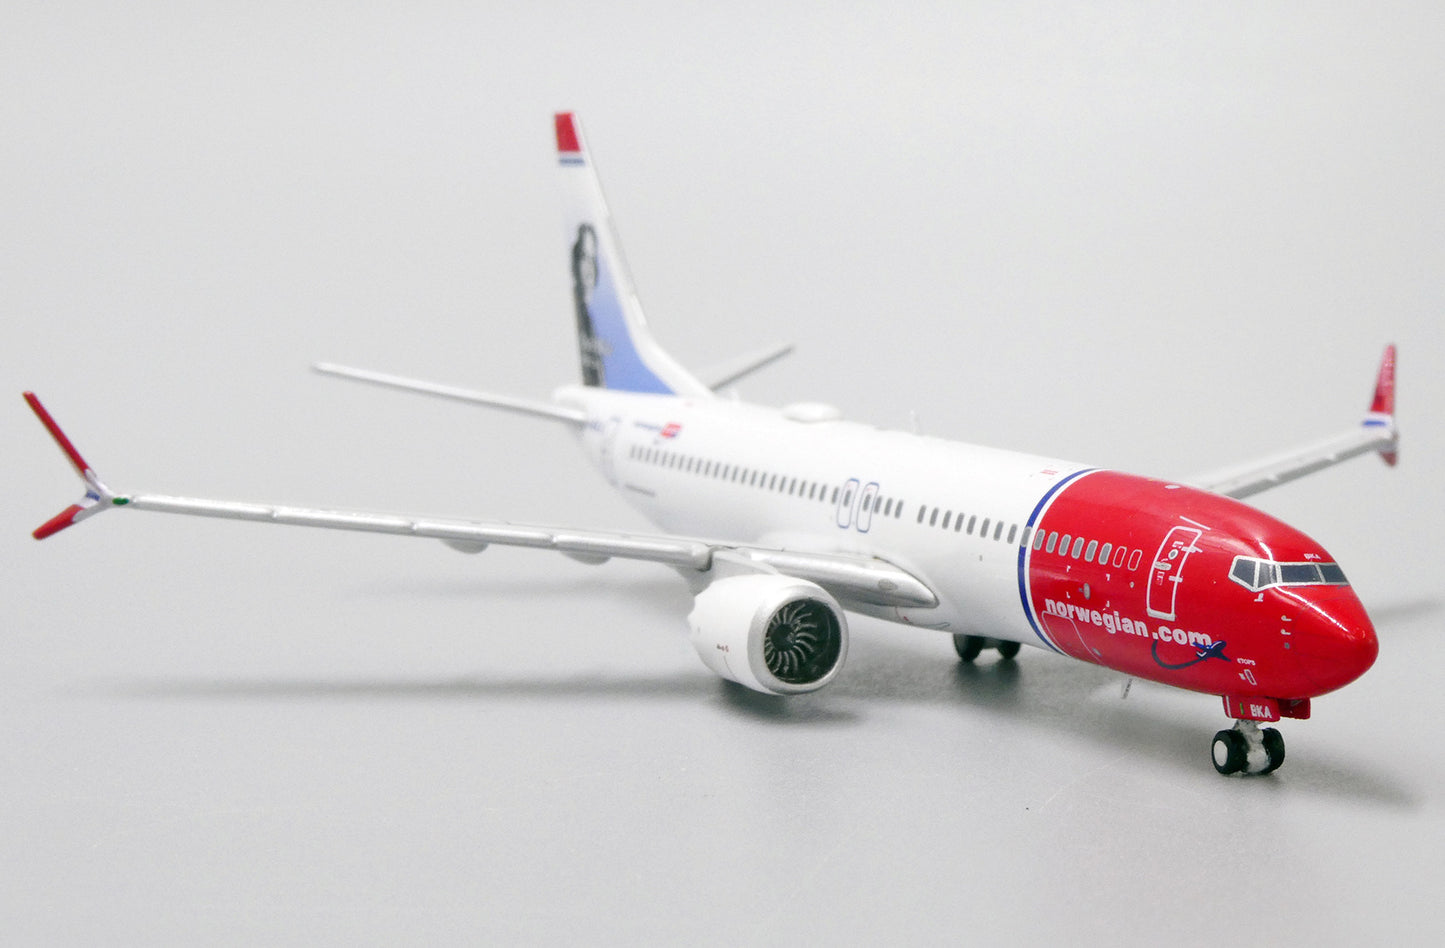 1:400 JC Wings Norwegian Airlines Boeing 737 MAX 8 LN-BKA XX4151